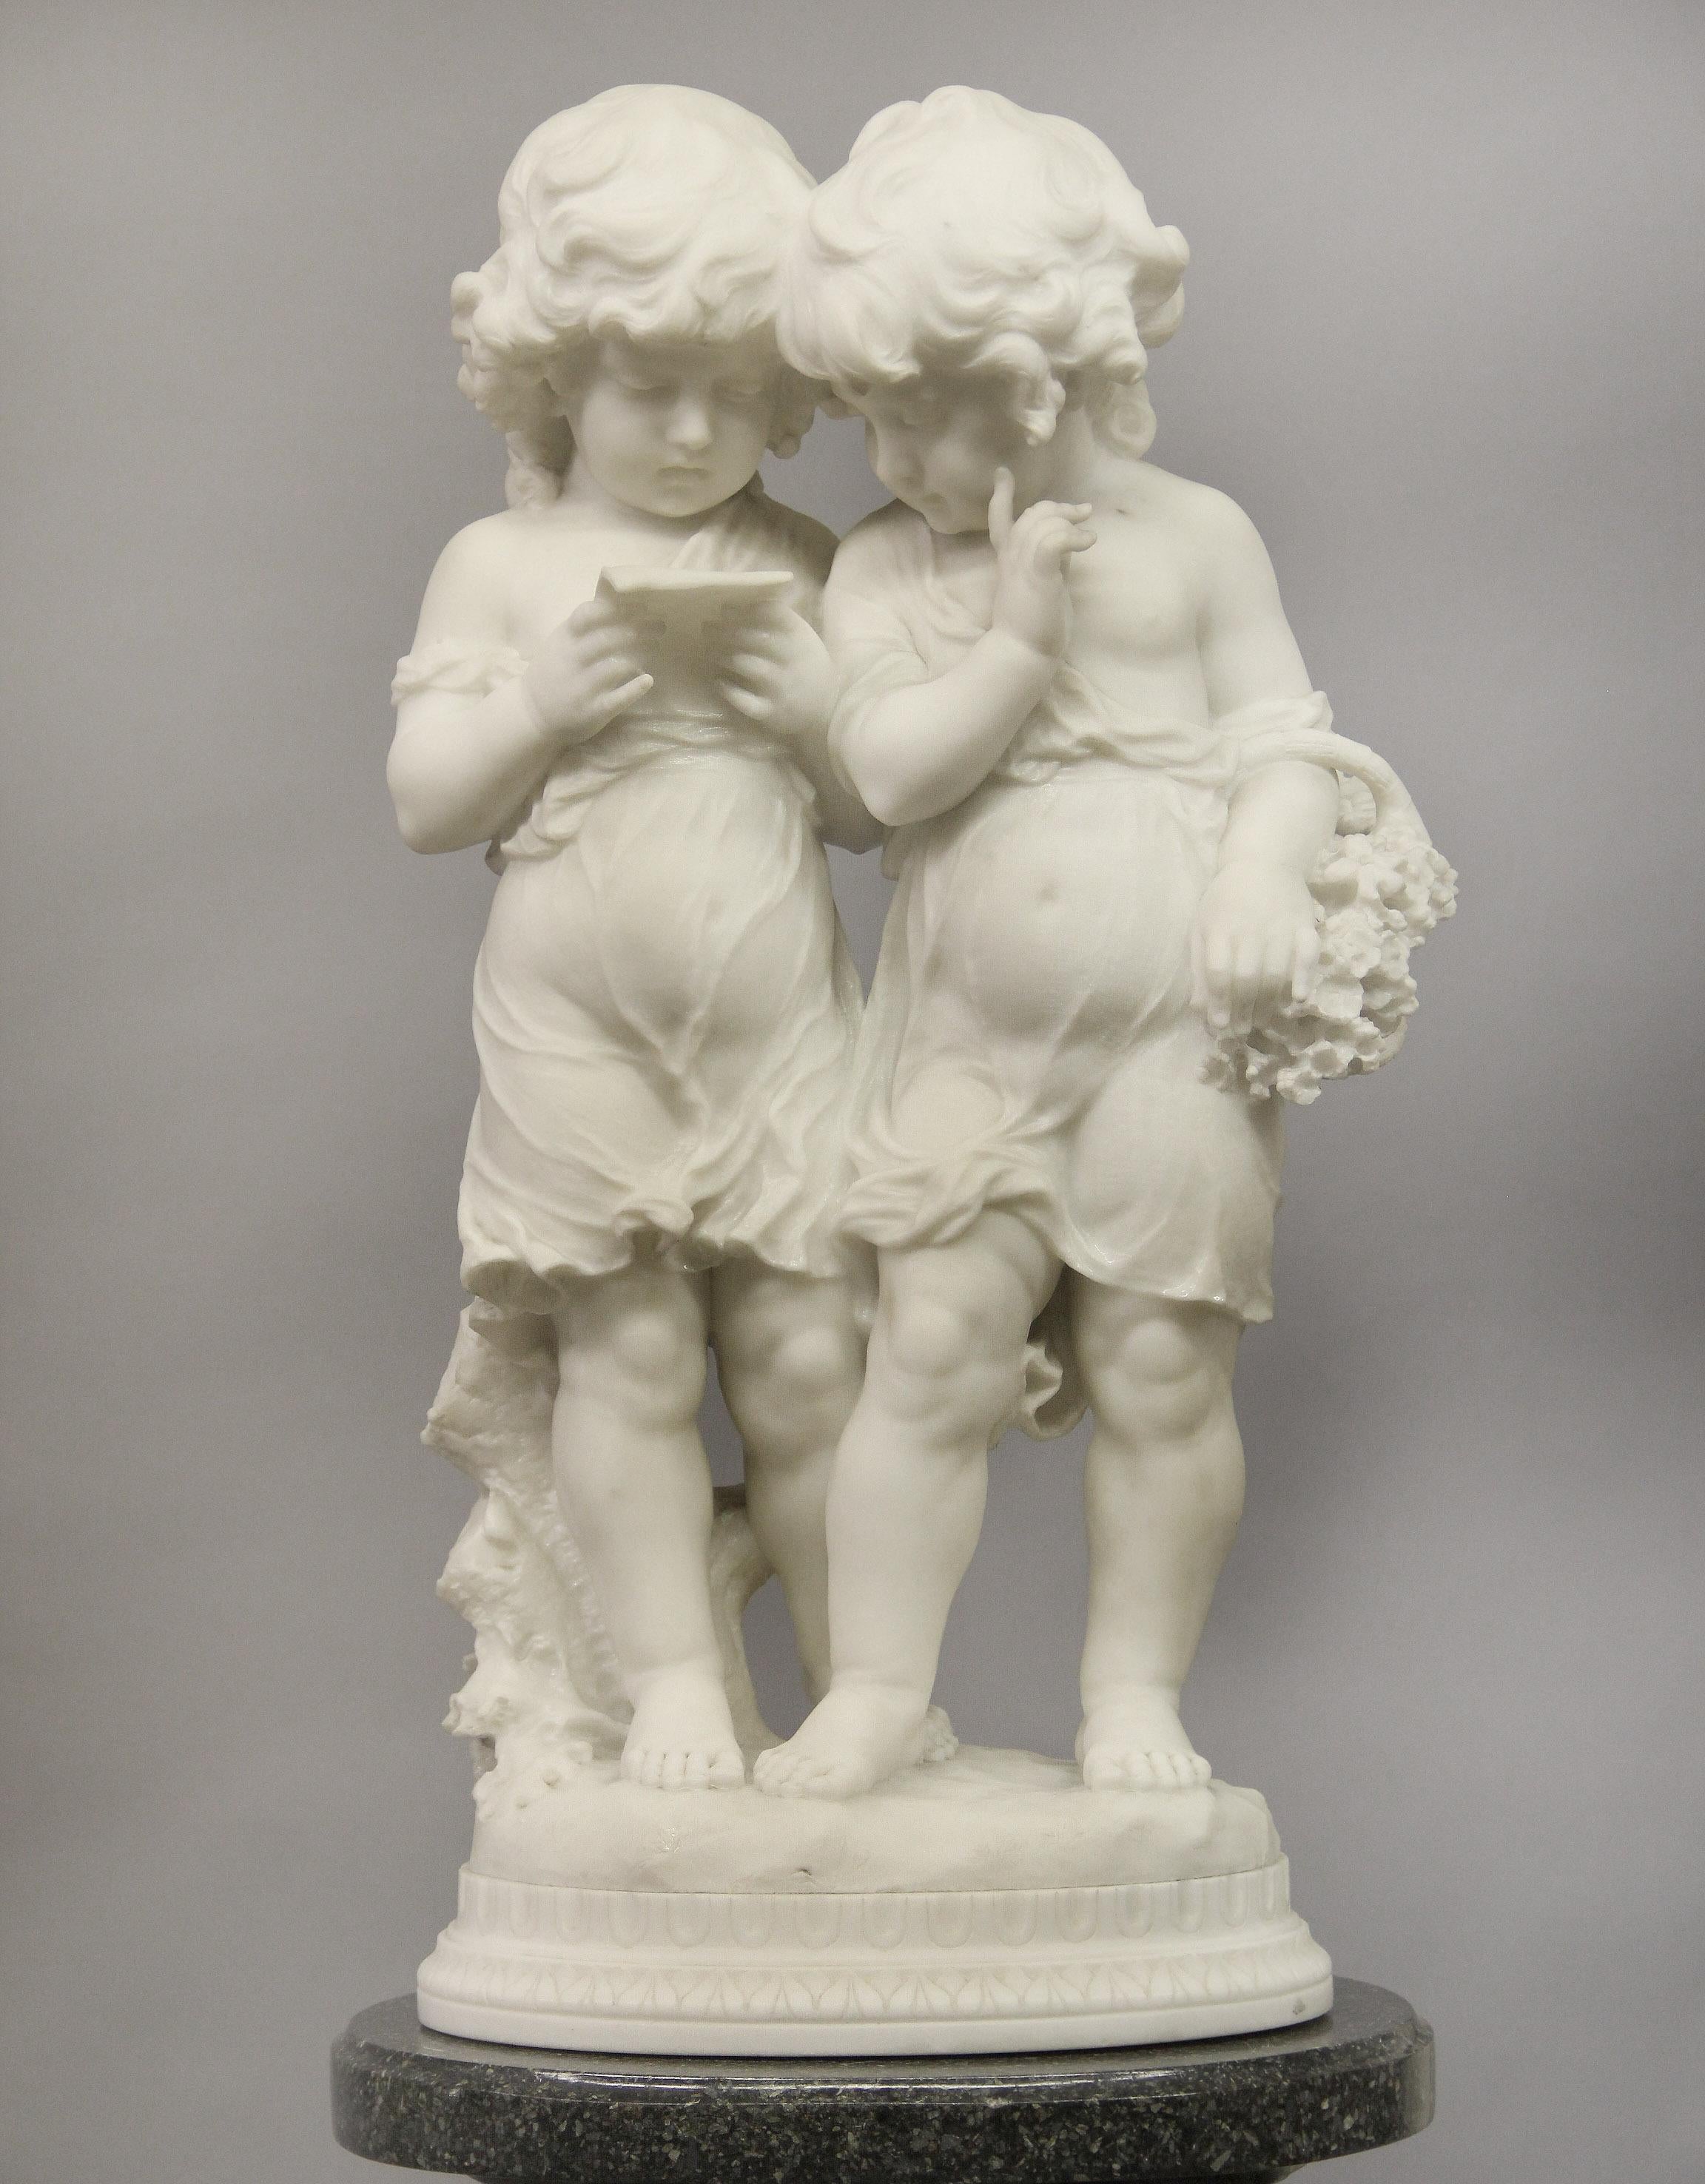 Belle sculpture italienne en marbre de Carrare du début du 20e siècle représentant deux sœurs par Affortunato Gori

Représentant deux petites filles lisant, l'une avec un panier de fleurs, debout sur une base ovale sculptée.

Inscrit A.